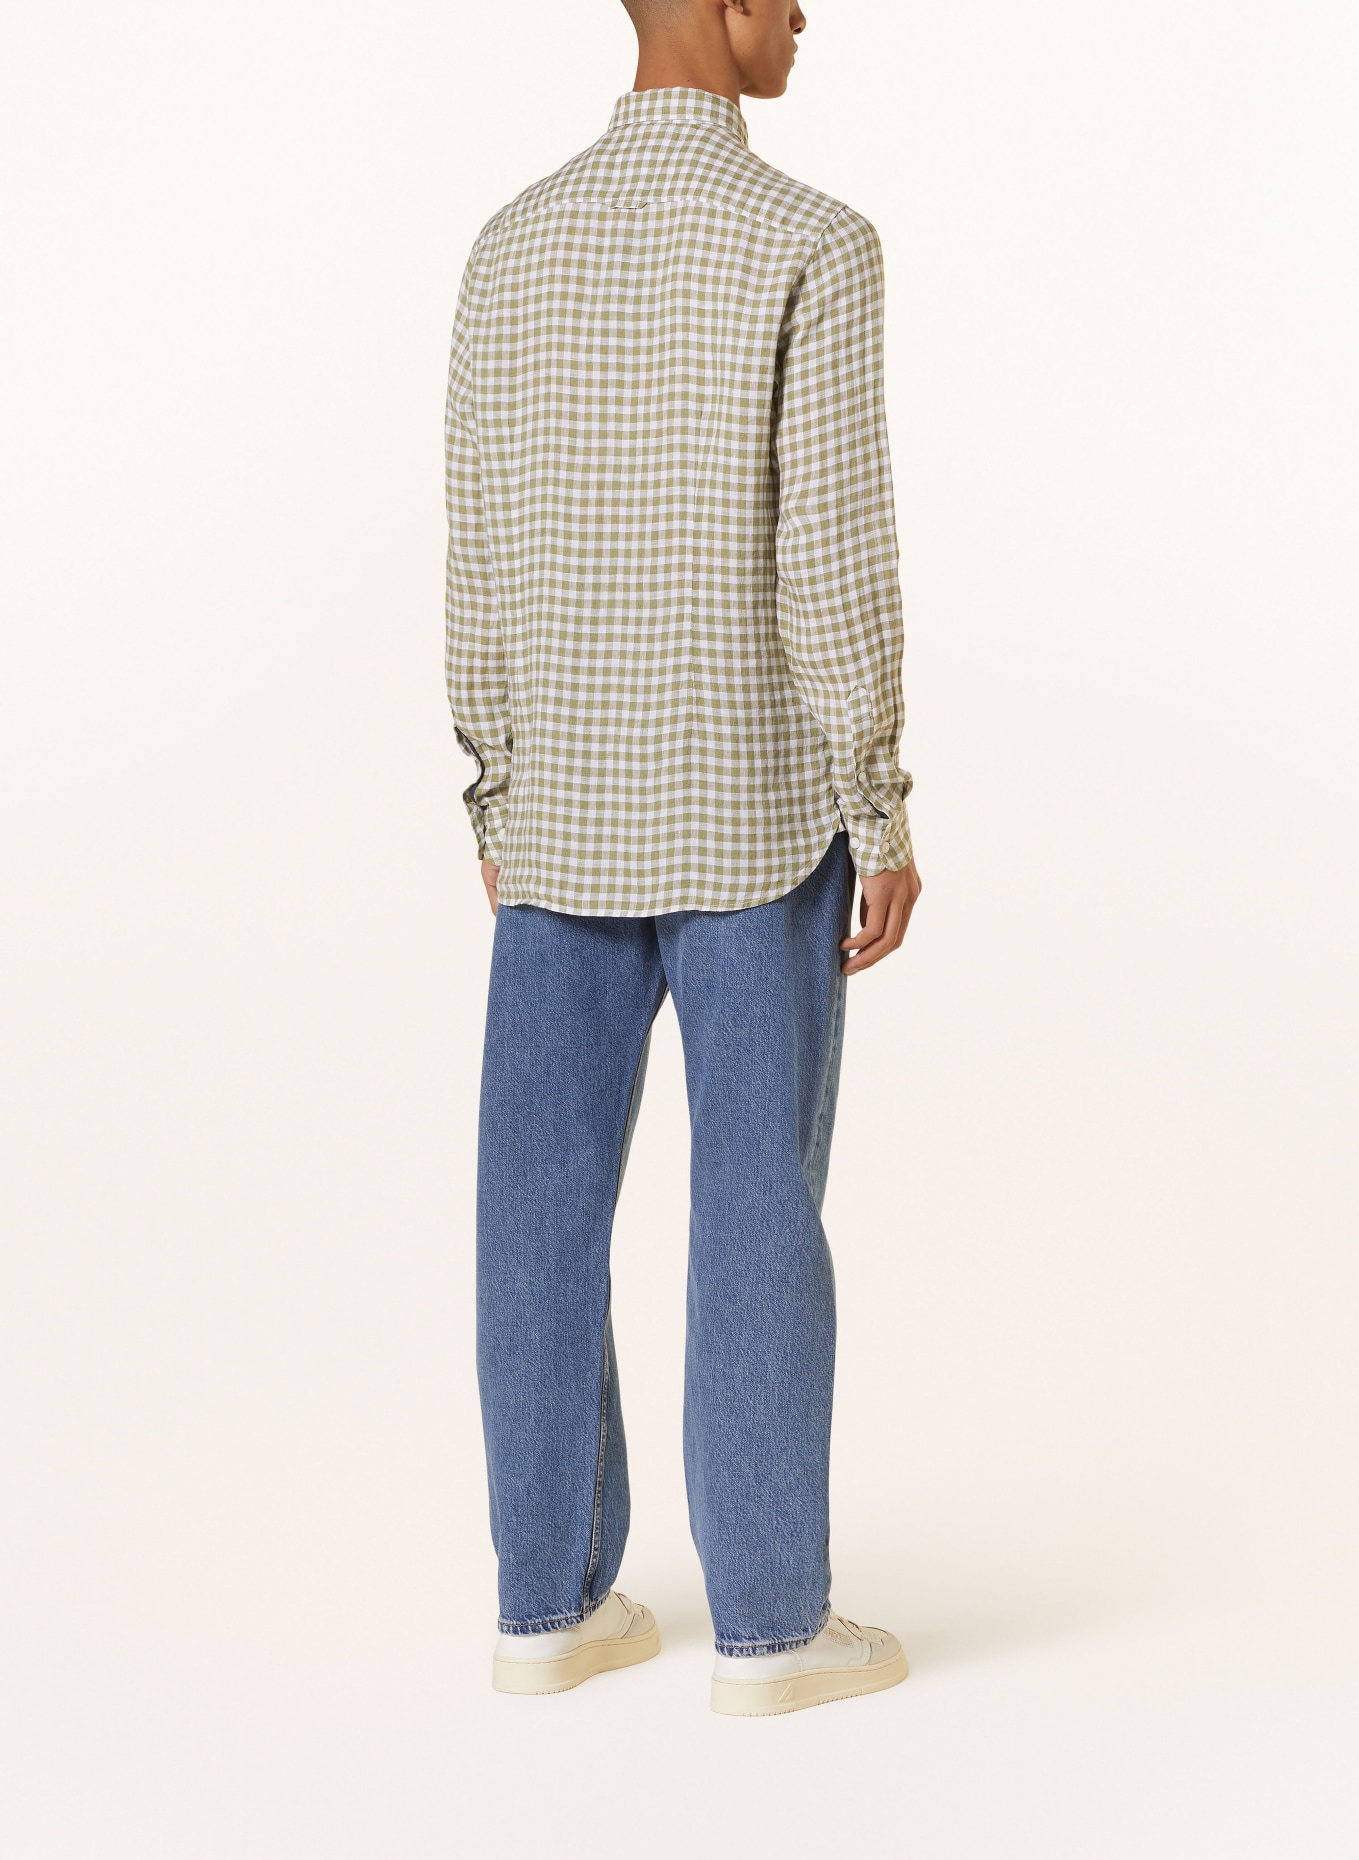 TOMMY HILFIGER Leinenhemd Slim Fit, Farbe: OLIV/ WEISS (Bild 3)